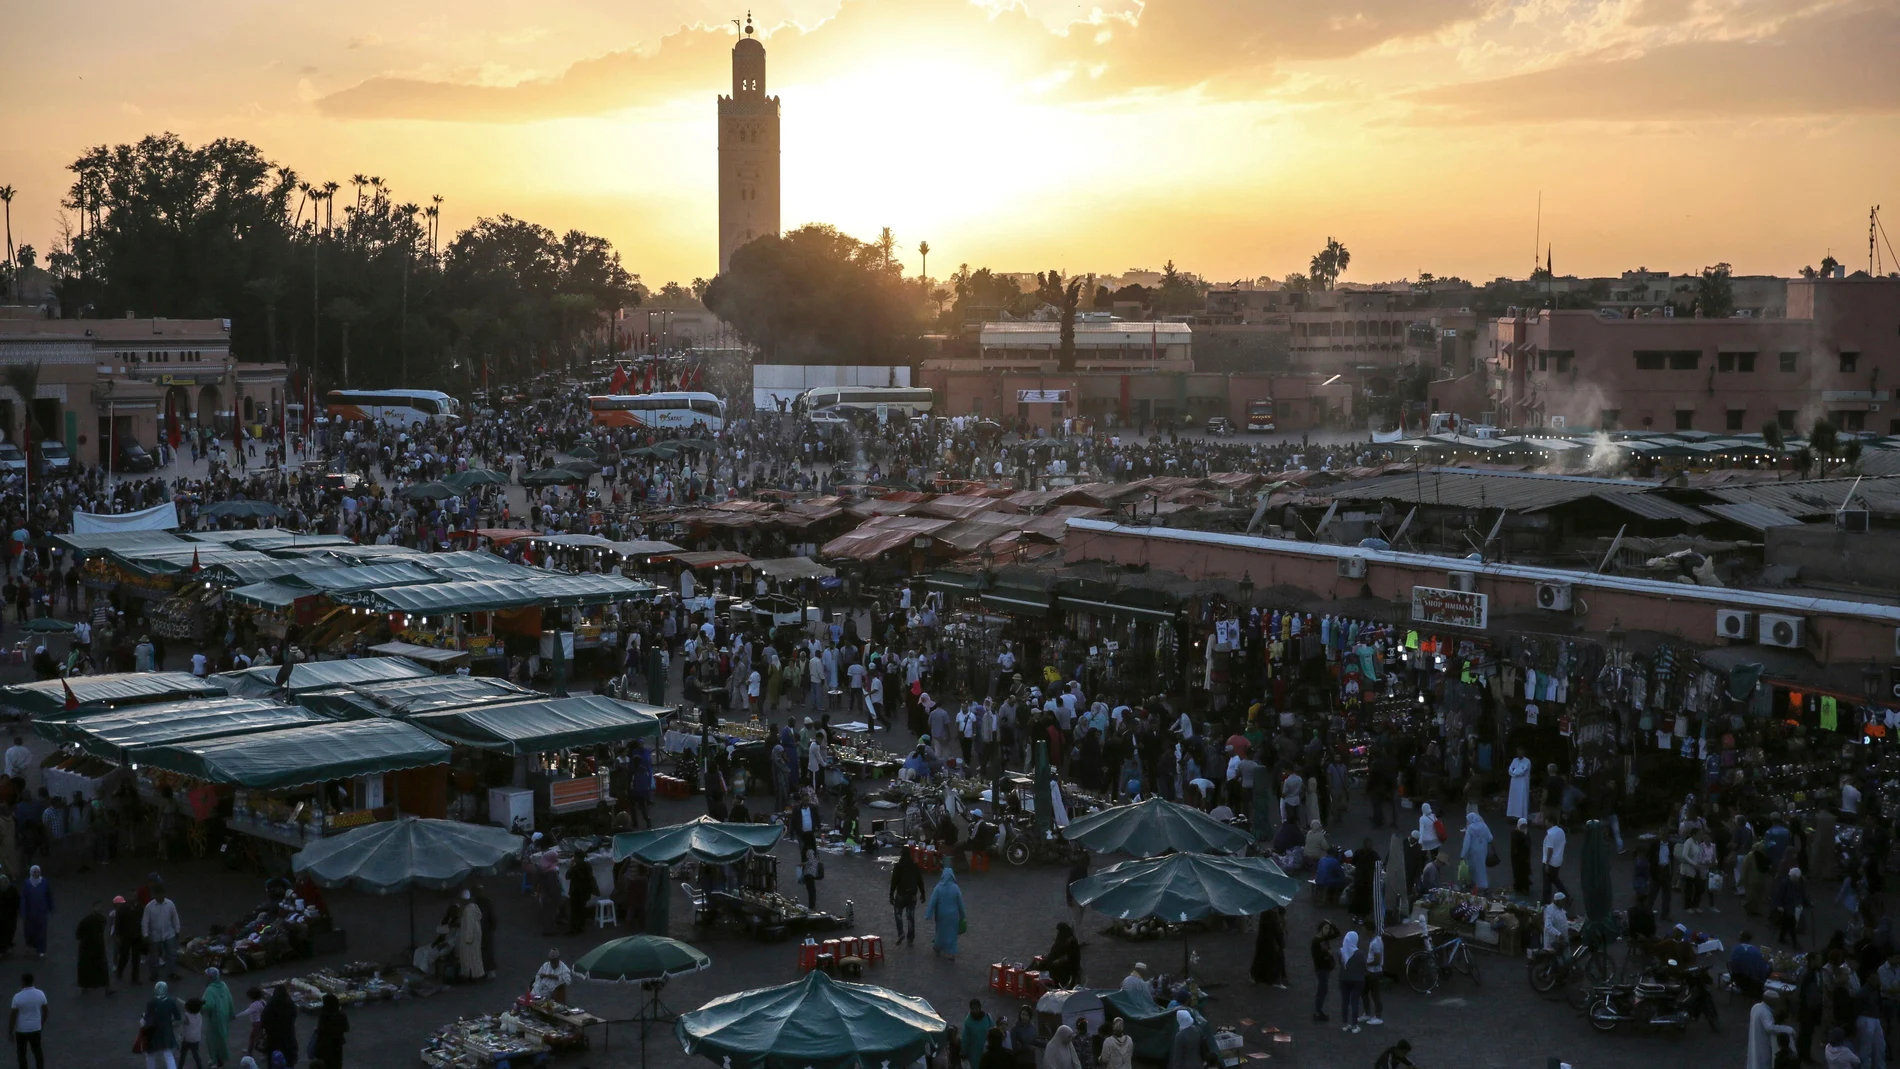 Foto de archivo de la ciudad de Marrakech. (AP Photo/Mosa'ab Elshamy, File)